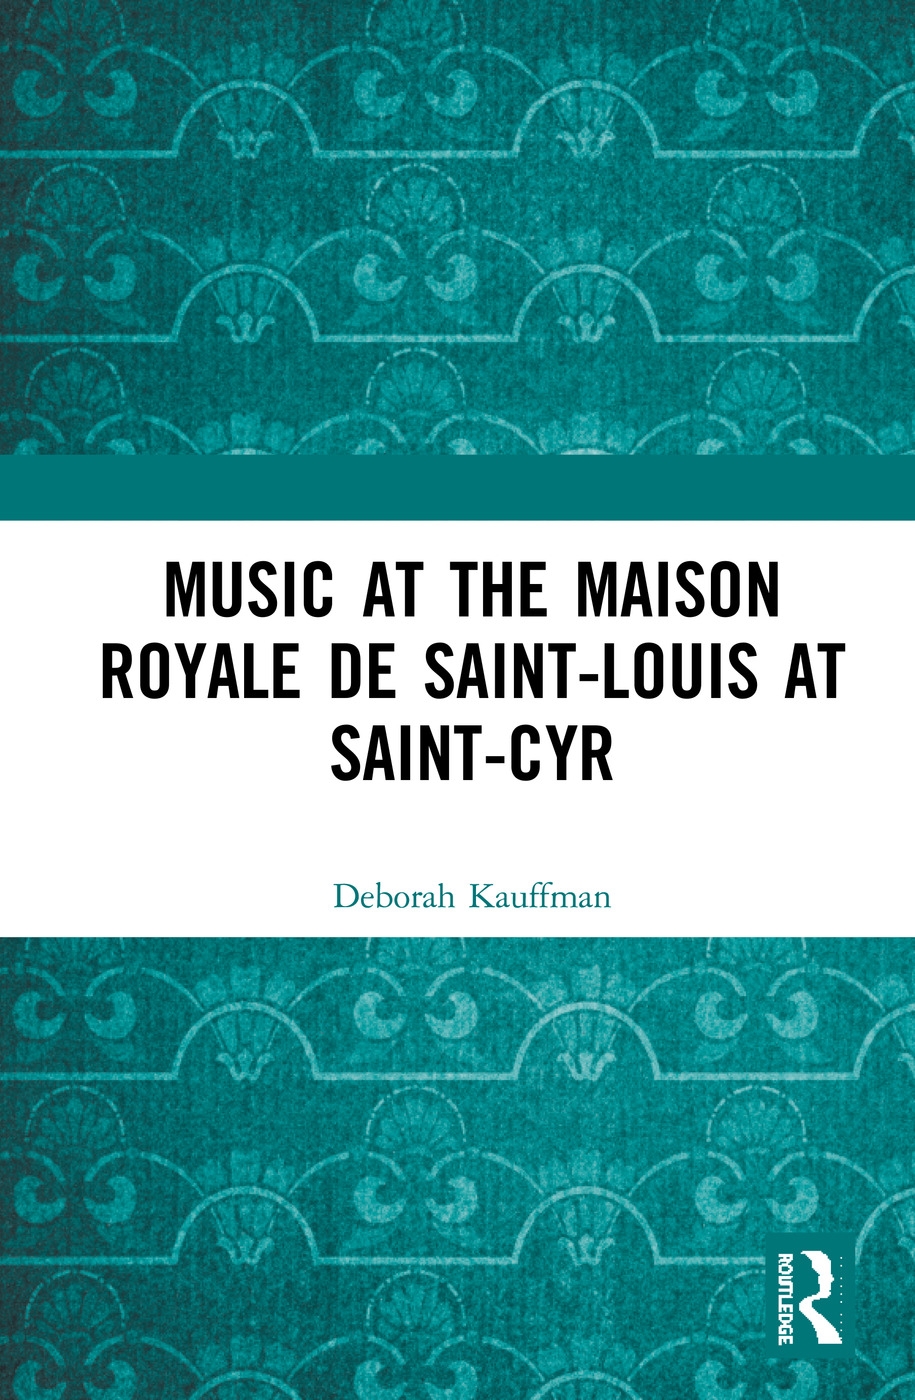 Music at the Maison Royale de Saint-Louis at Saint-Cyr